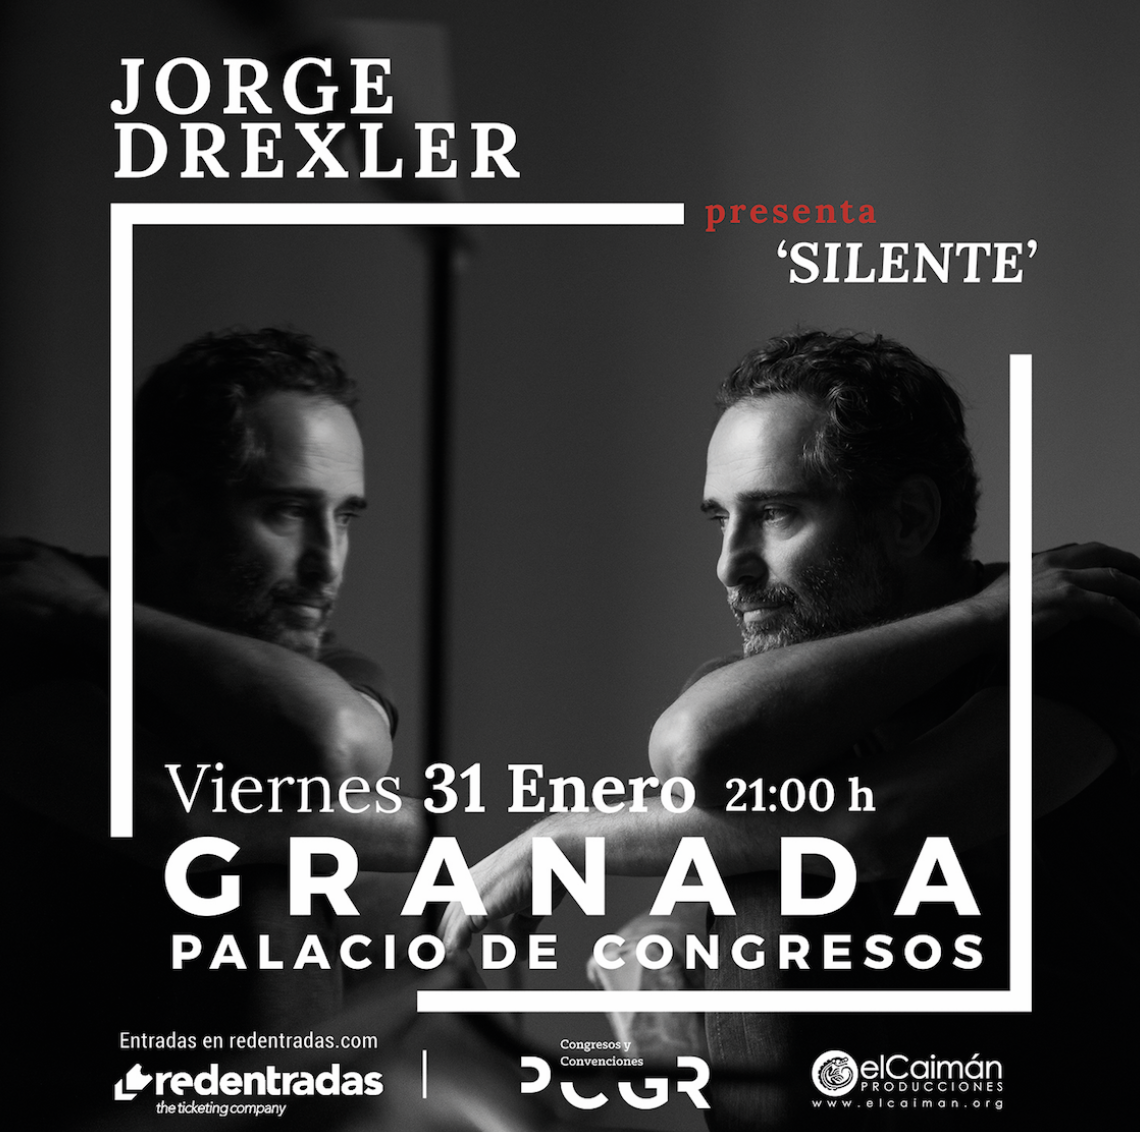 Jorge Drexler presenta en el Palacio de Congresos de Granada Silente